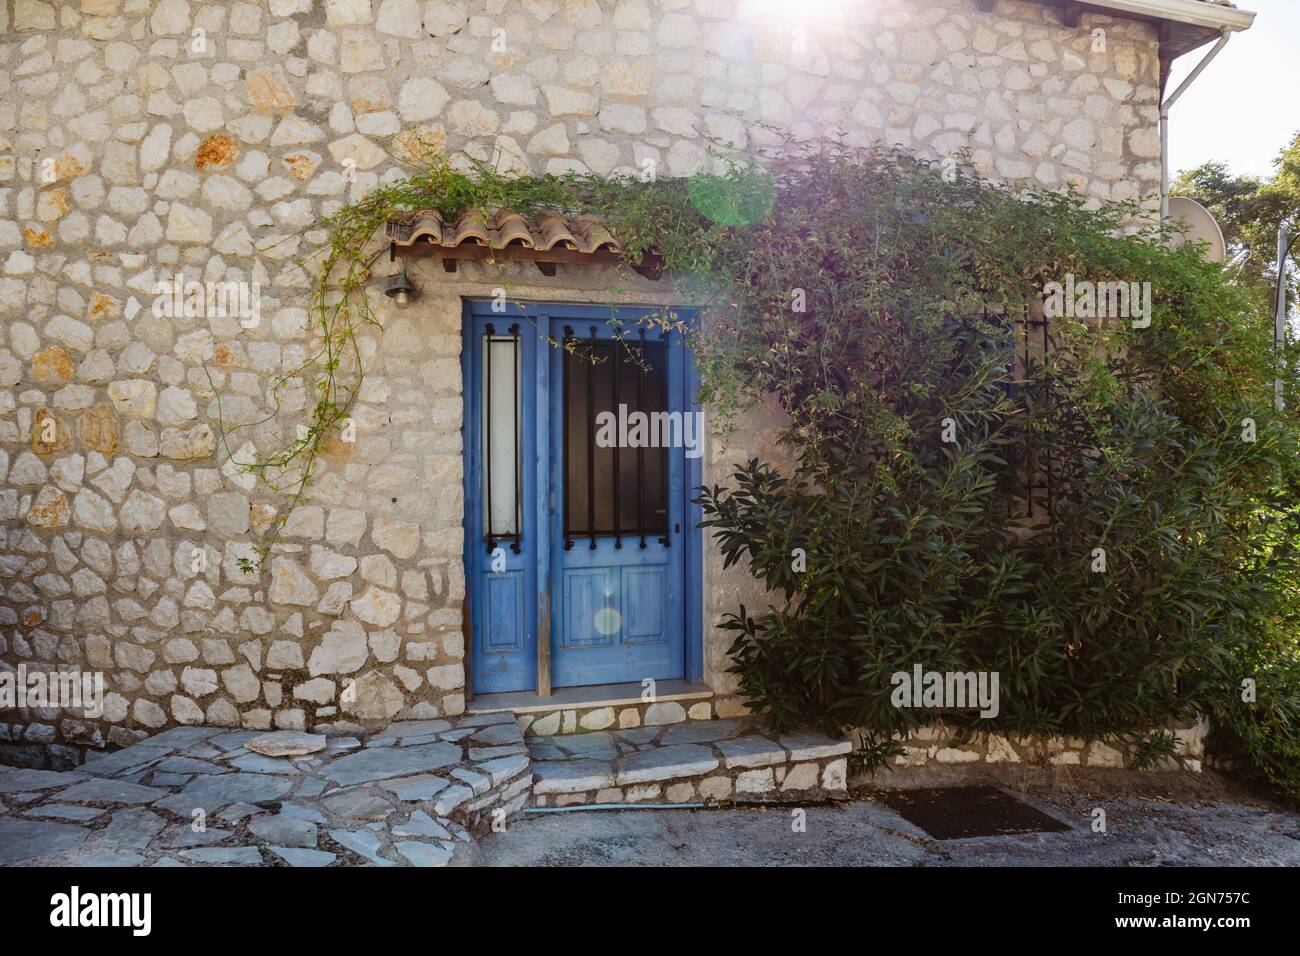 Le soleil brille au-dessus du toit traditionnel grec de la maison avec des murs en pierre, des volets de portes bleues et des branches vertes. Voyage d'été dans la Méditerranée traditionnelle vi Banque D'Images